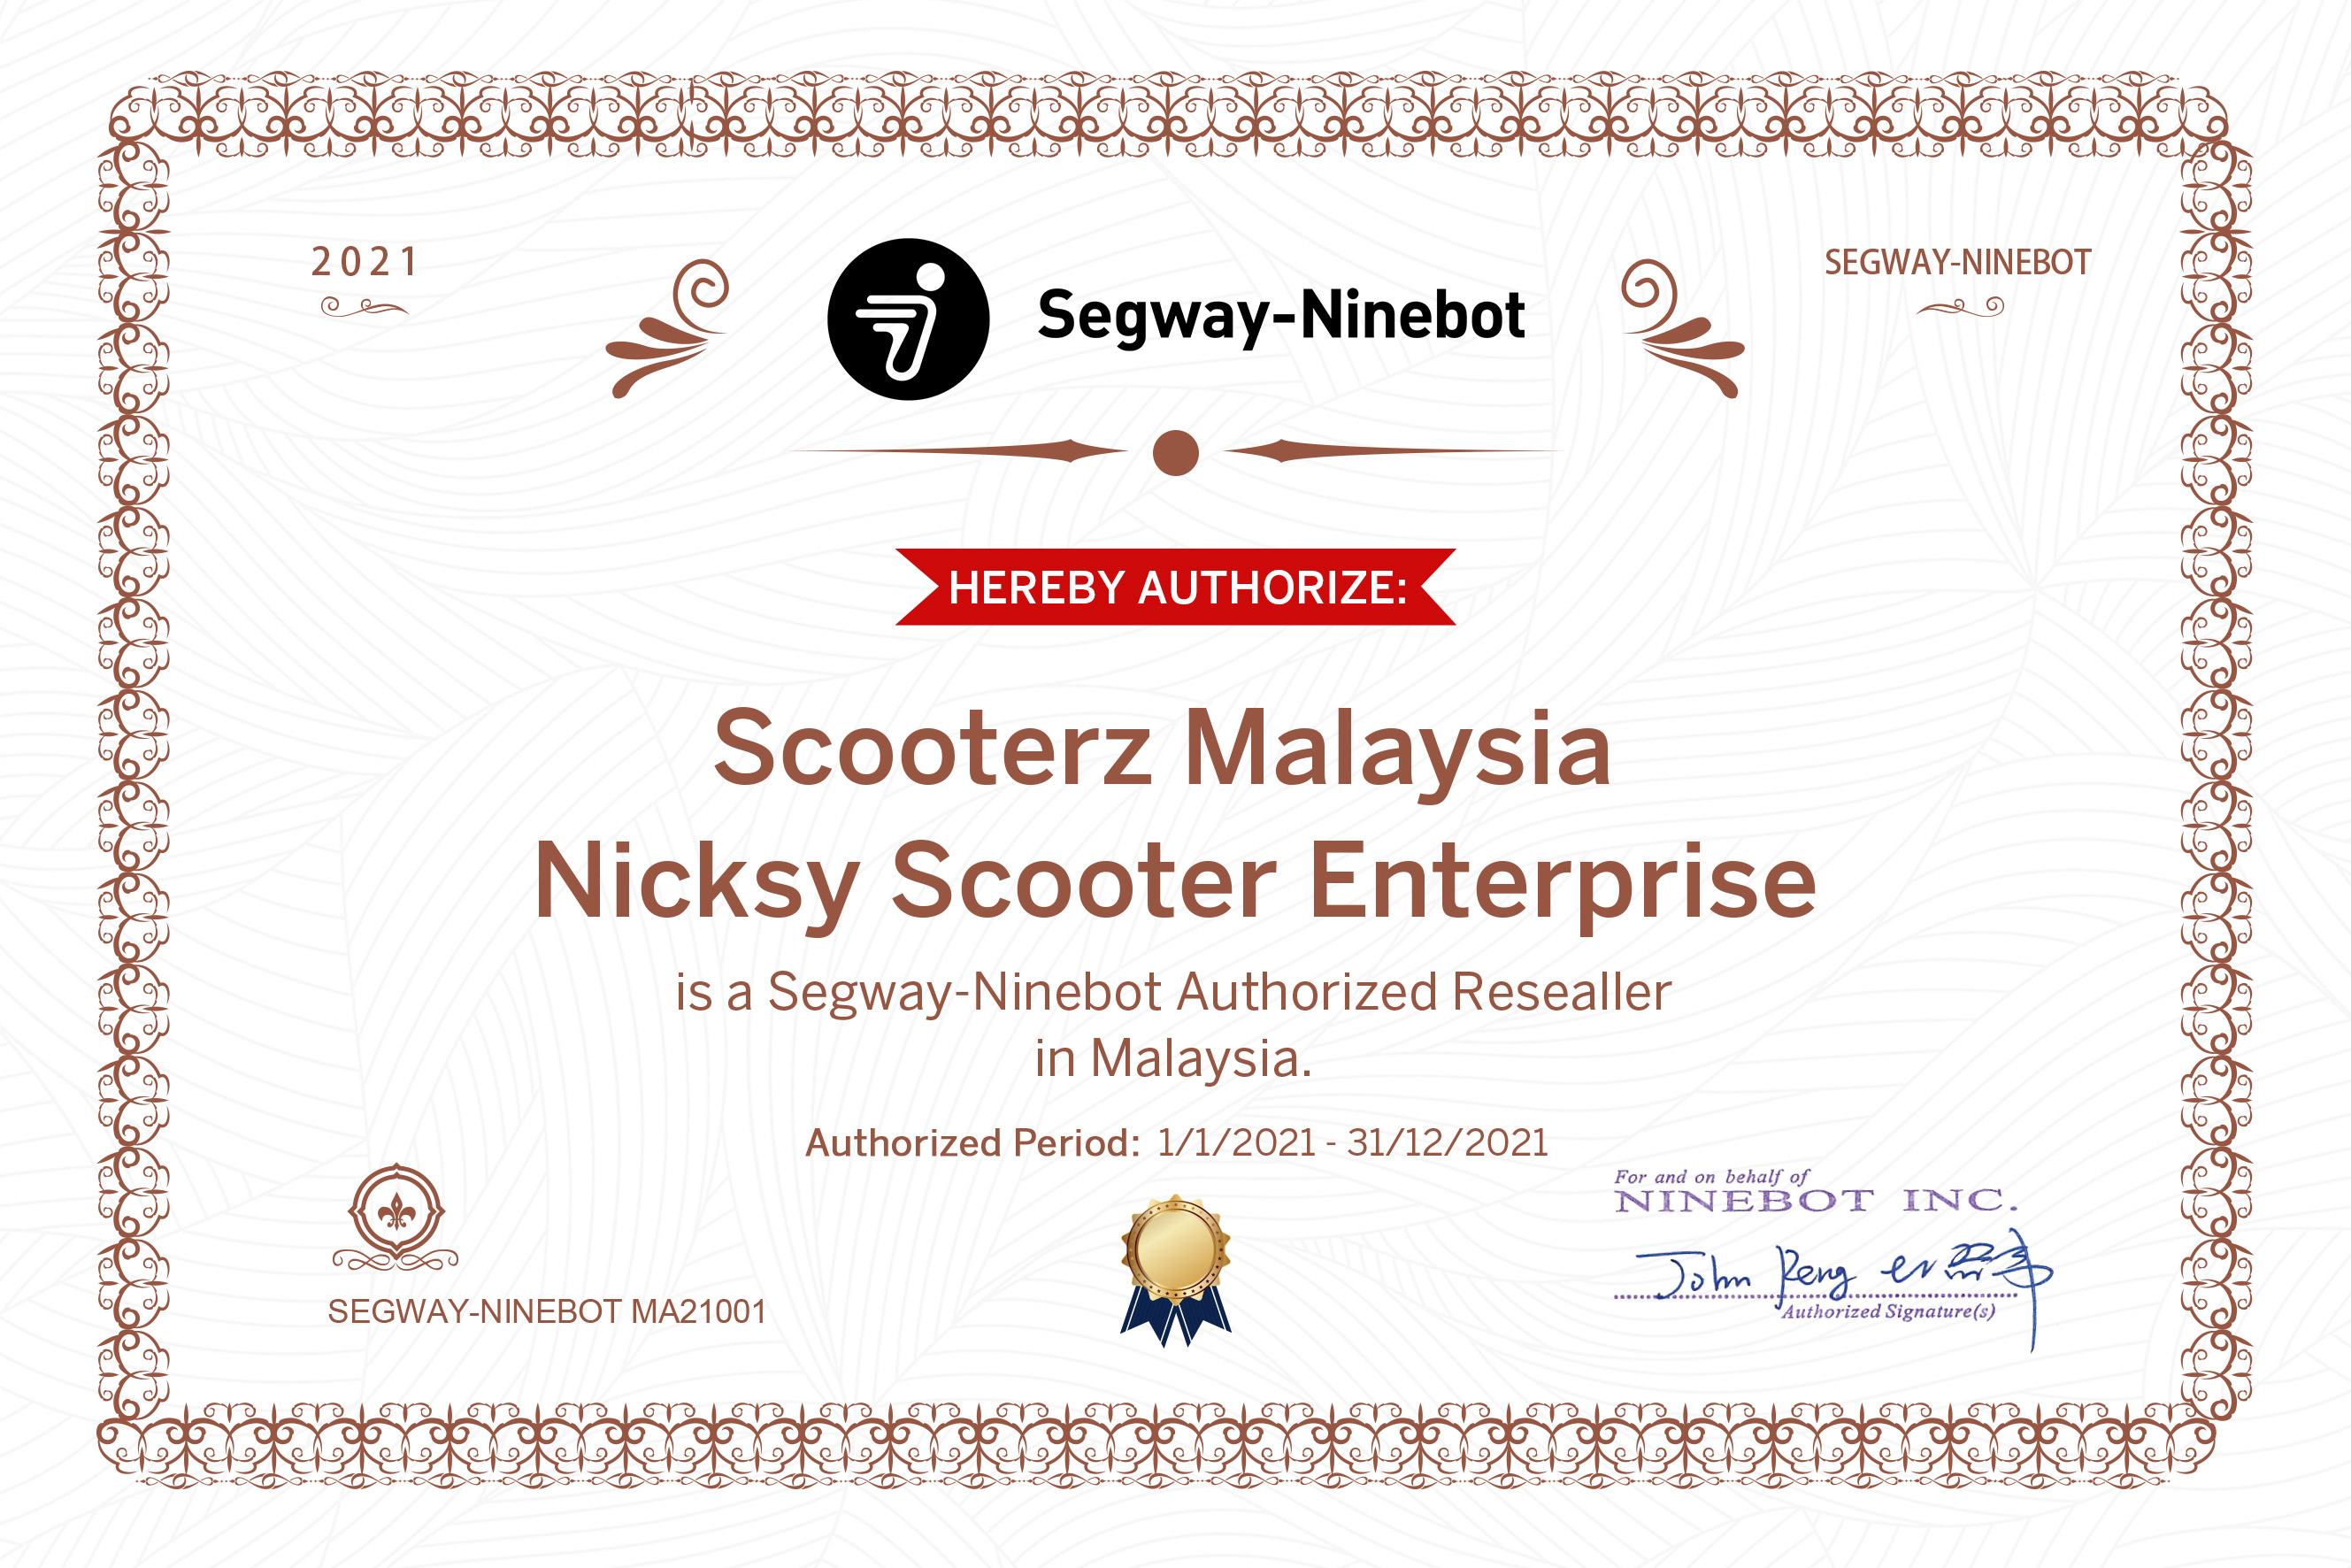 segway-ninebot malaysia